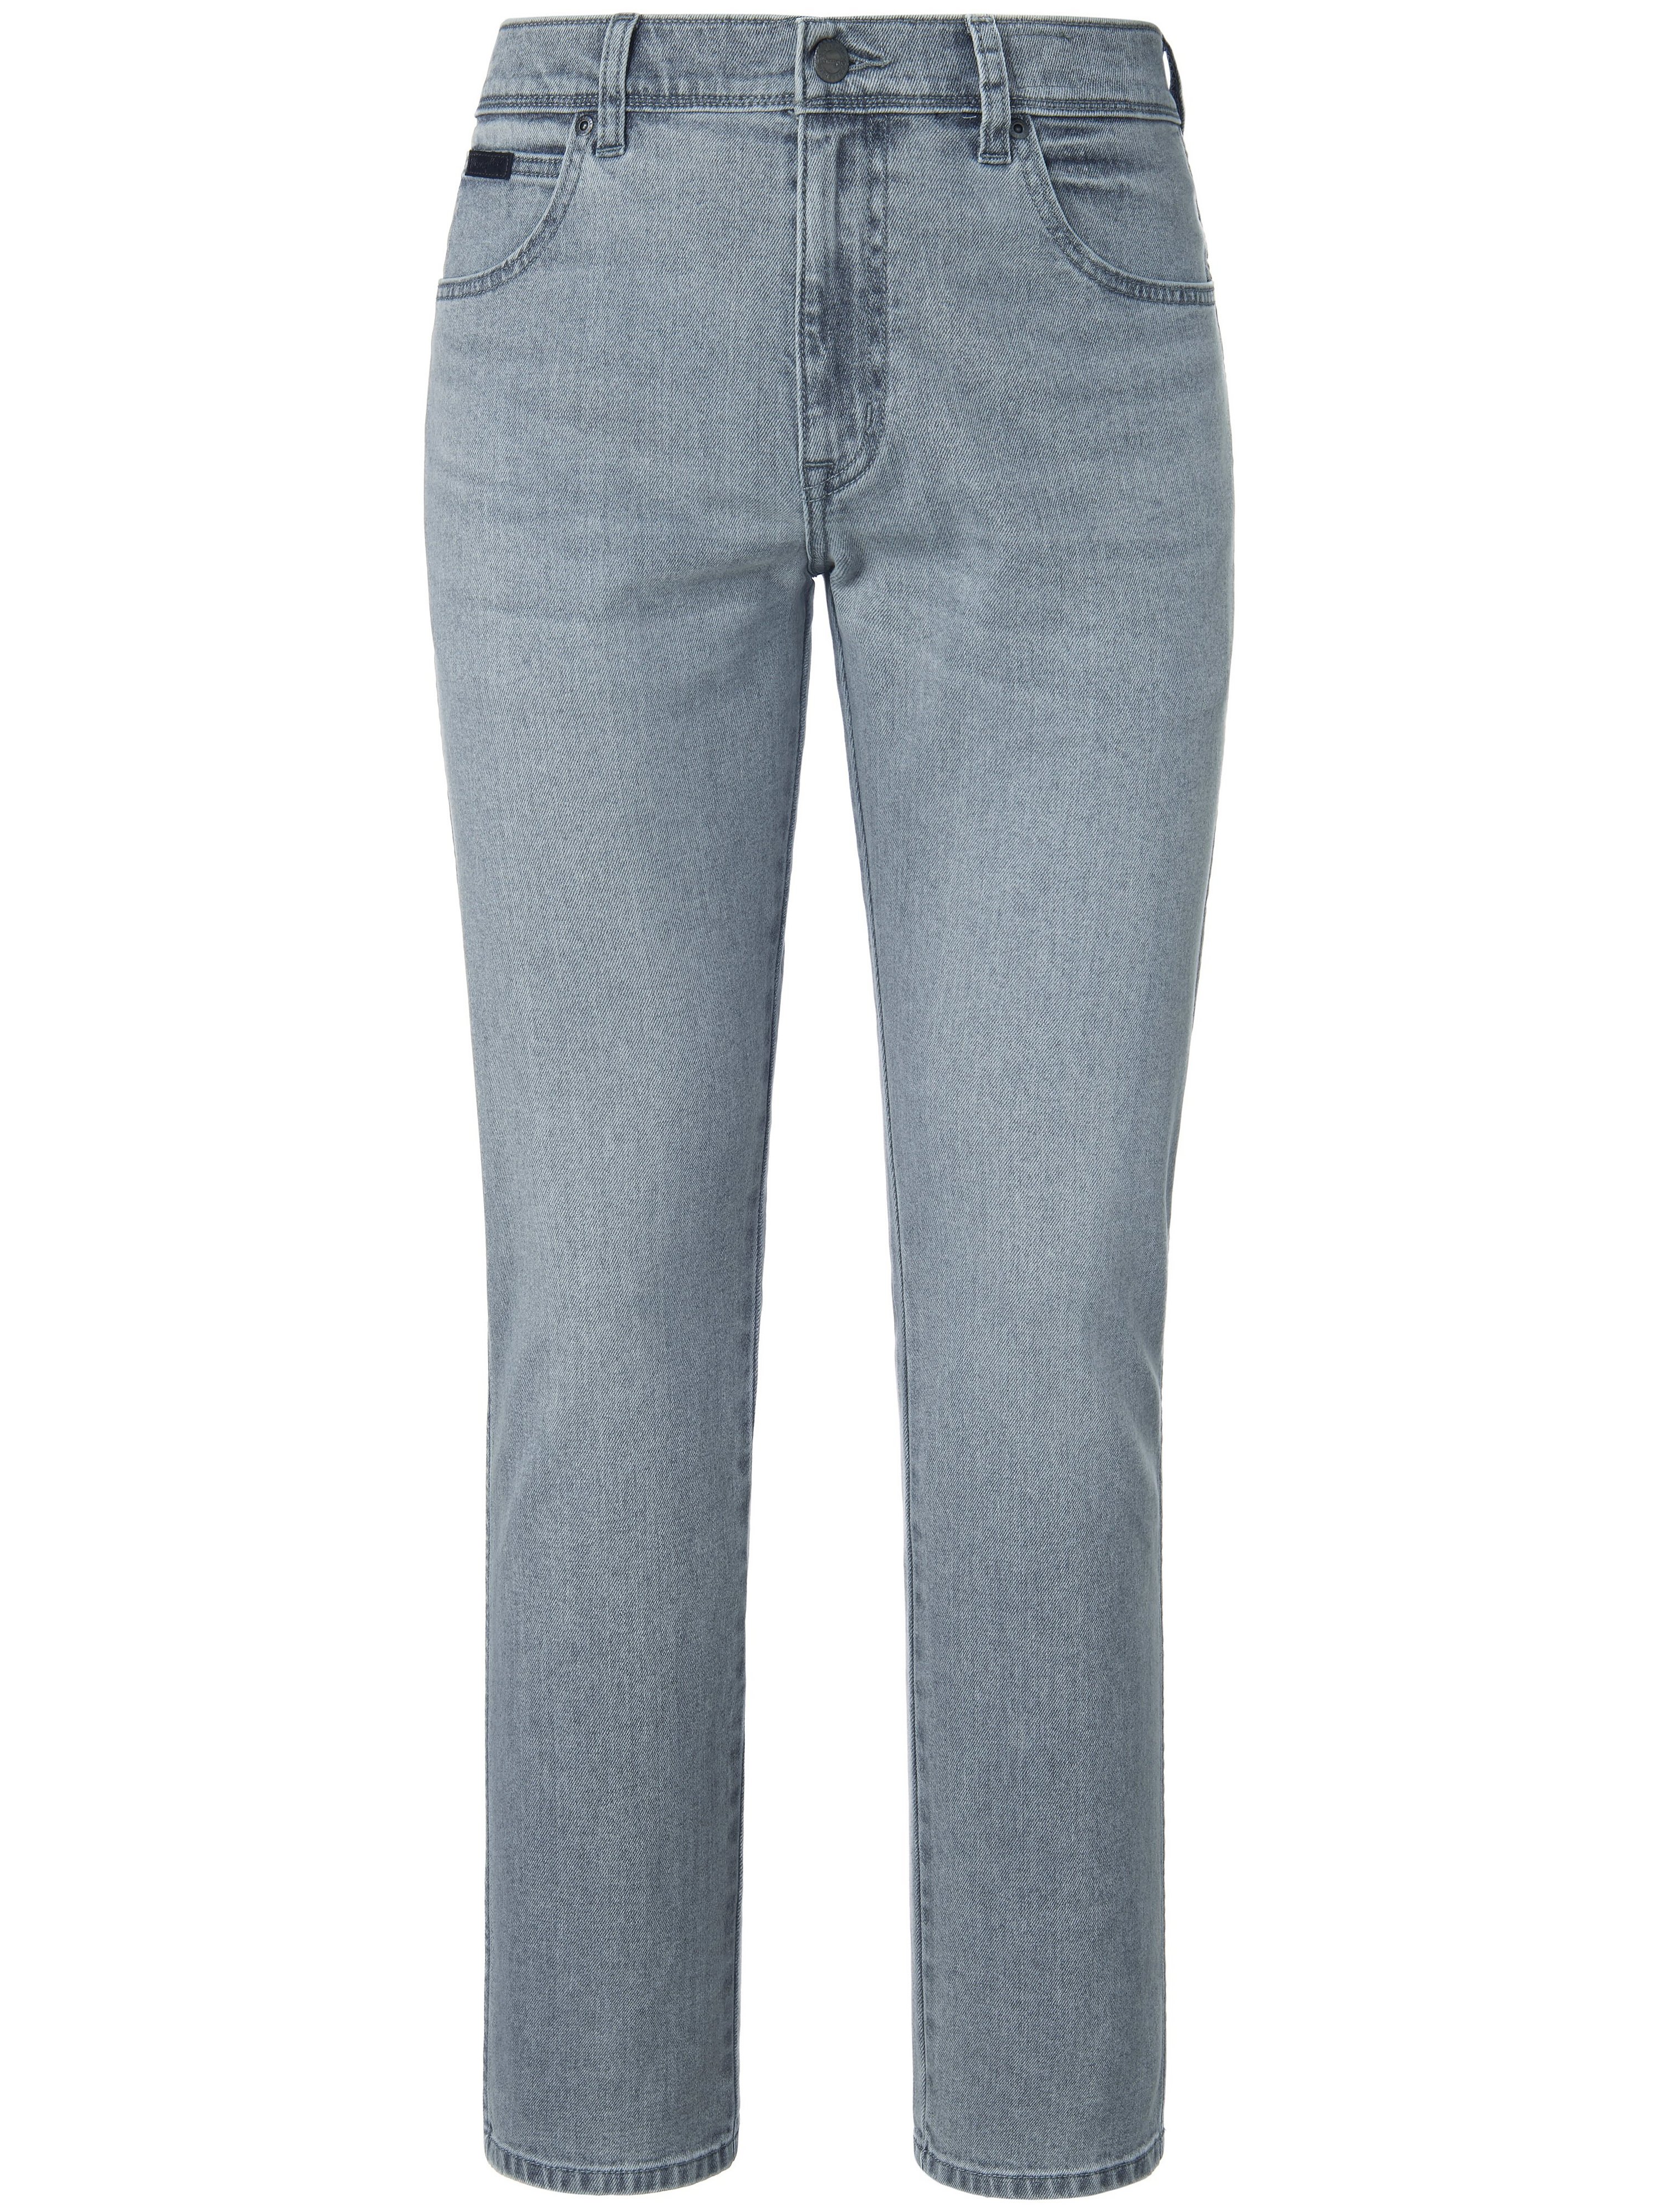 Jeans Inch 32 Wrangler grau Größe: 38